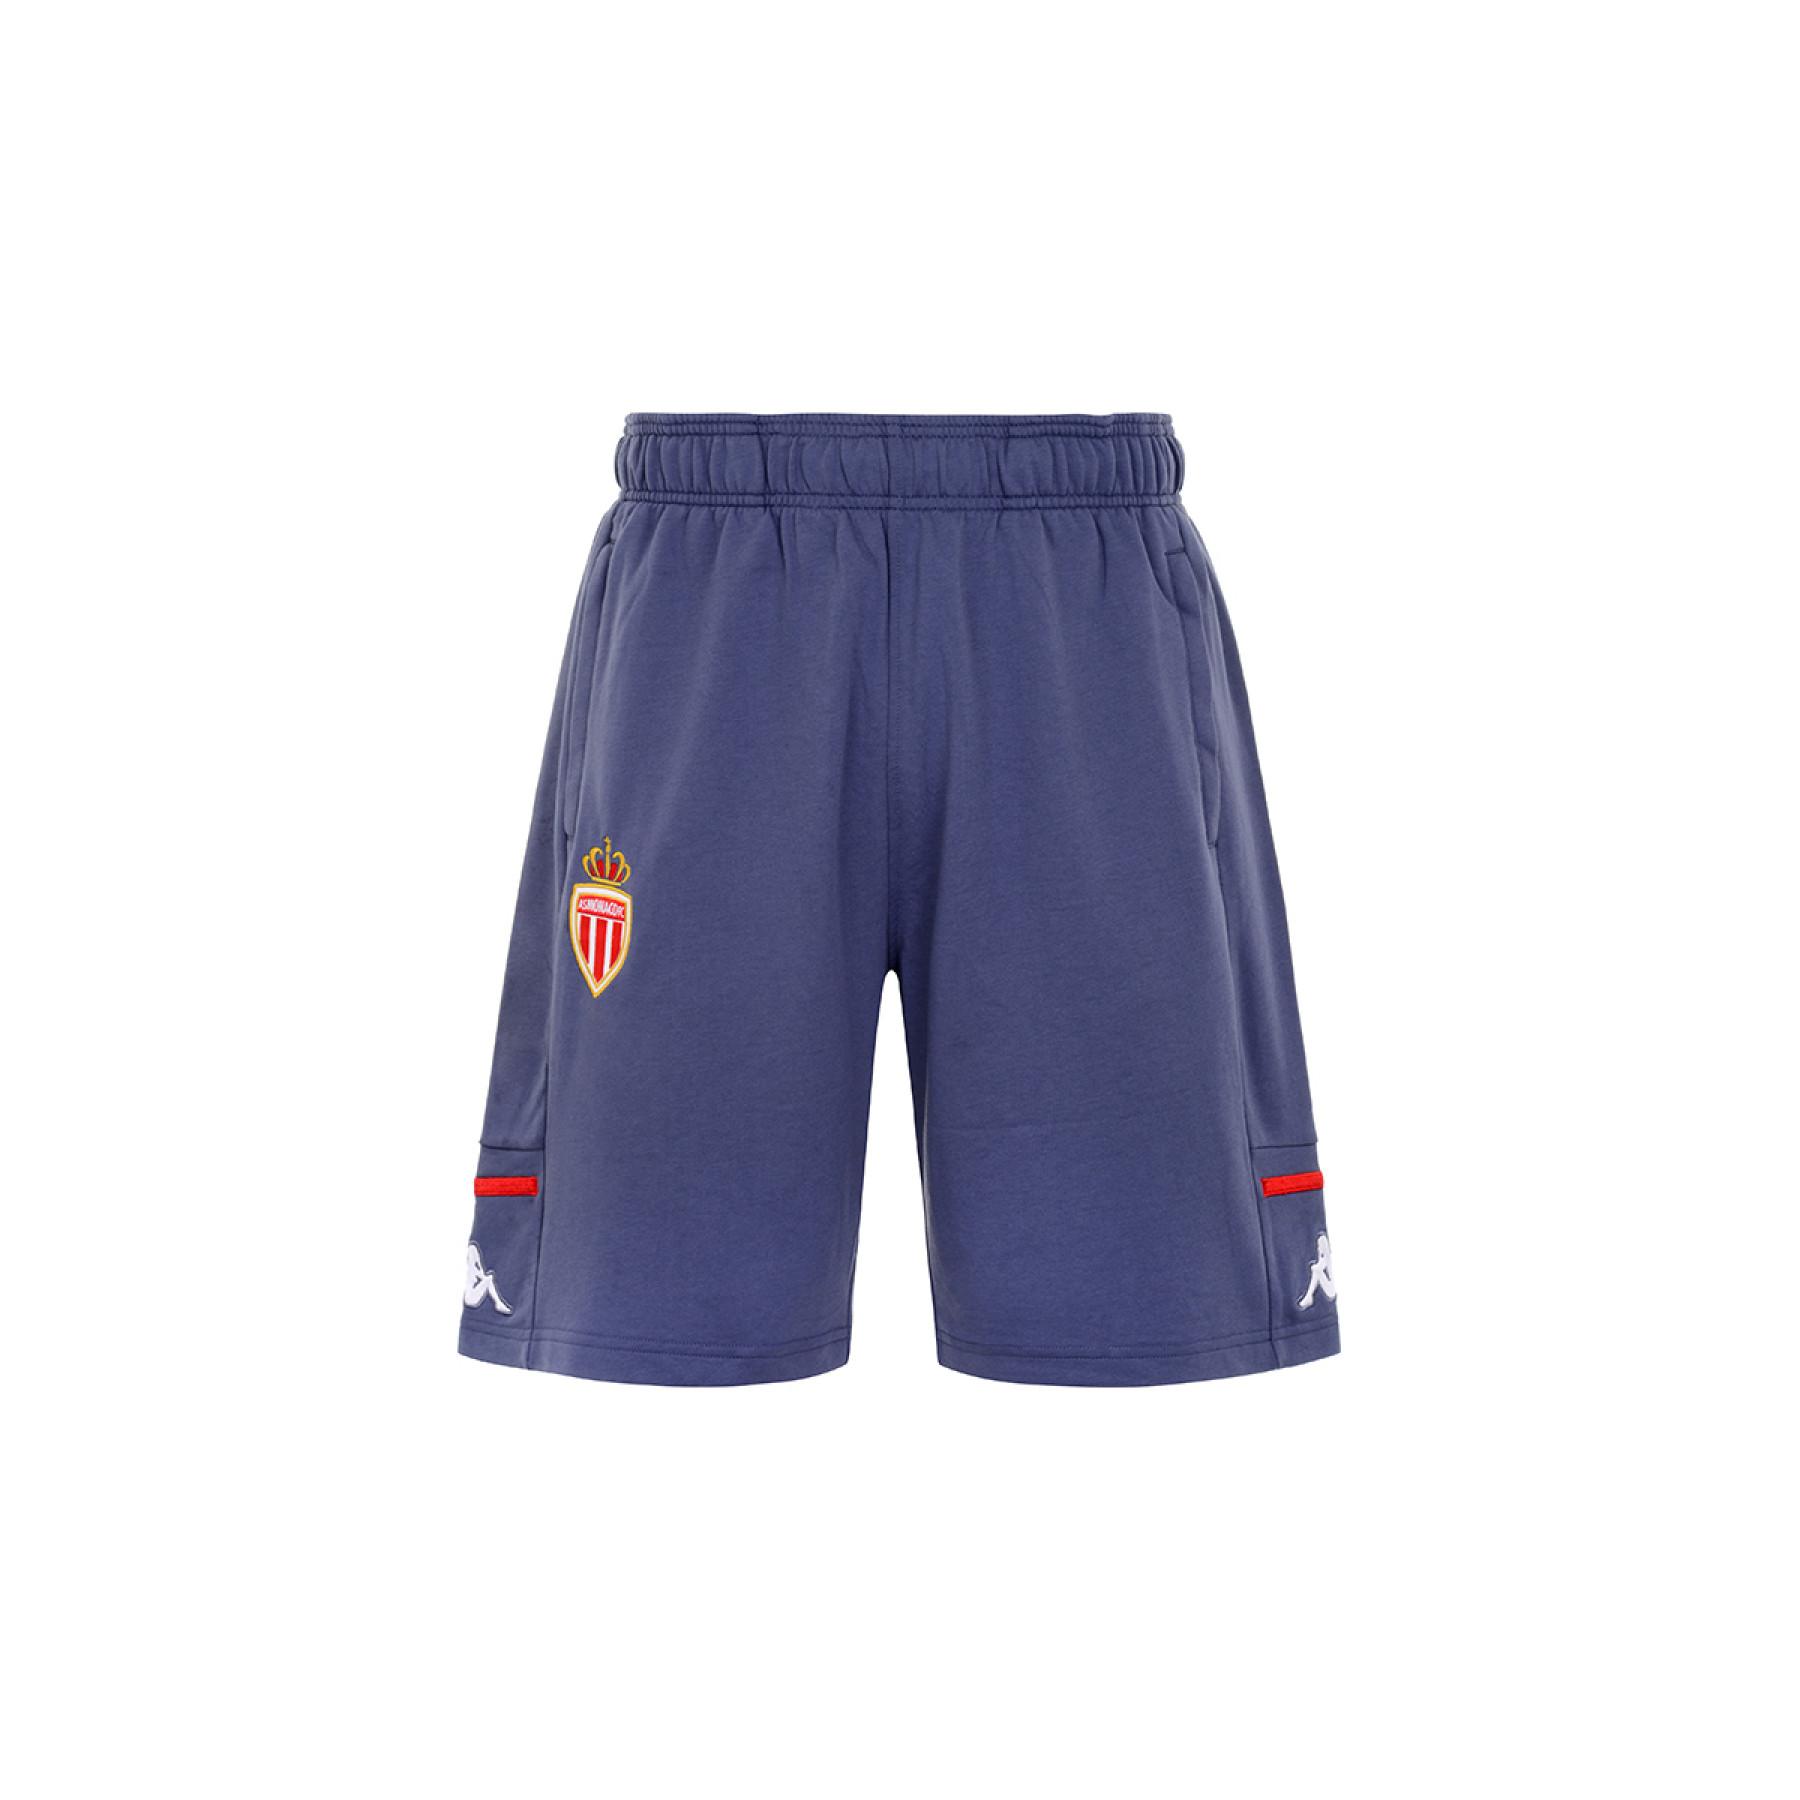 Pantaloncini AS Monaco 2020/21 alyzip 4